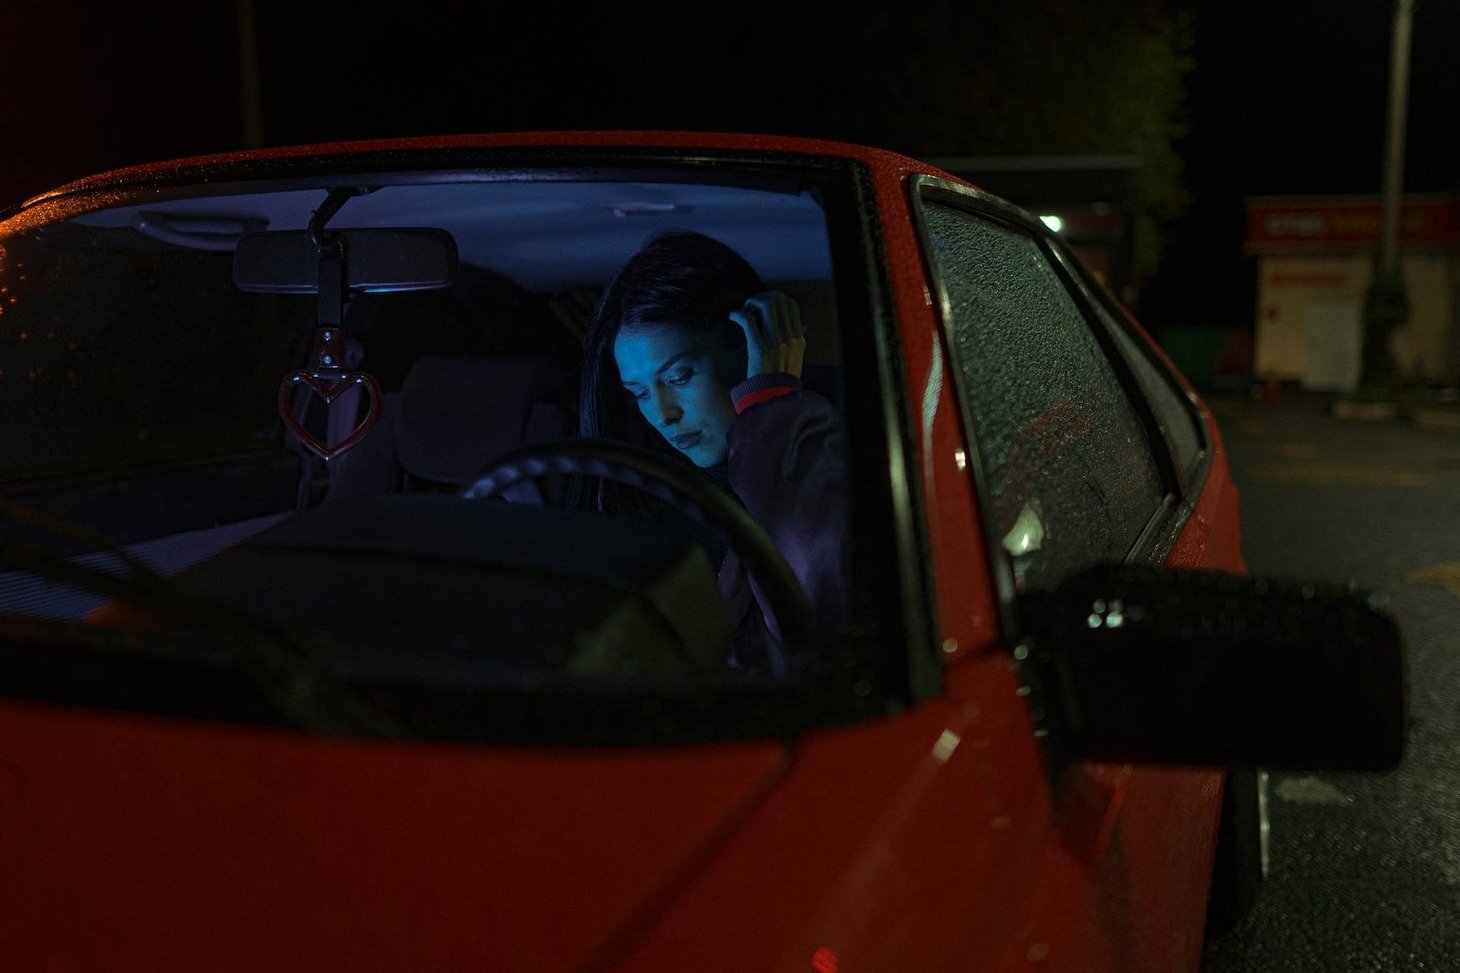 Una mujer dentro de un automóvil mirando su teléfono celular. | Foto: Pexels